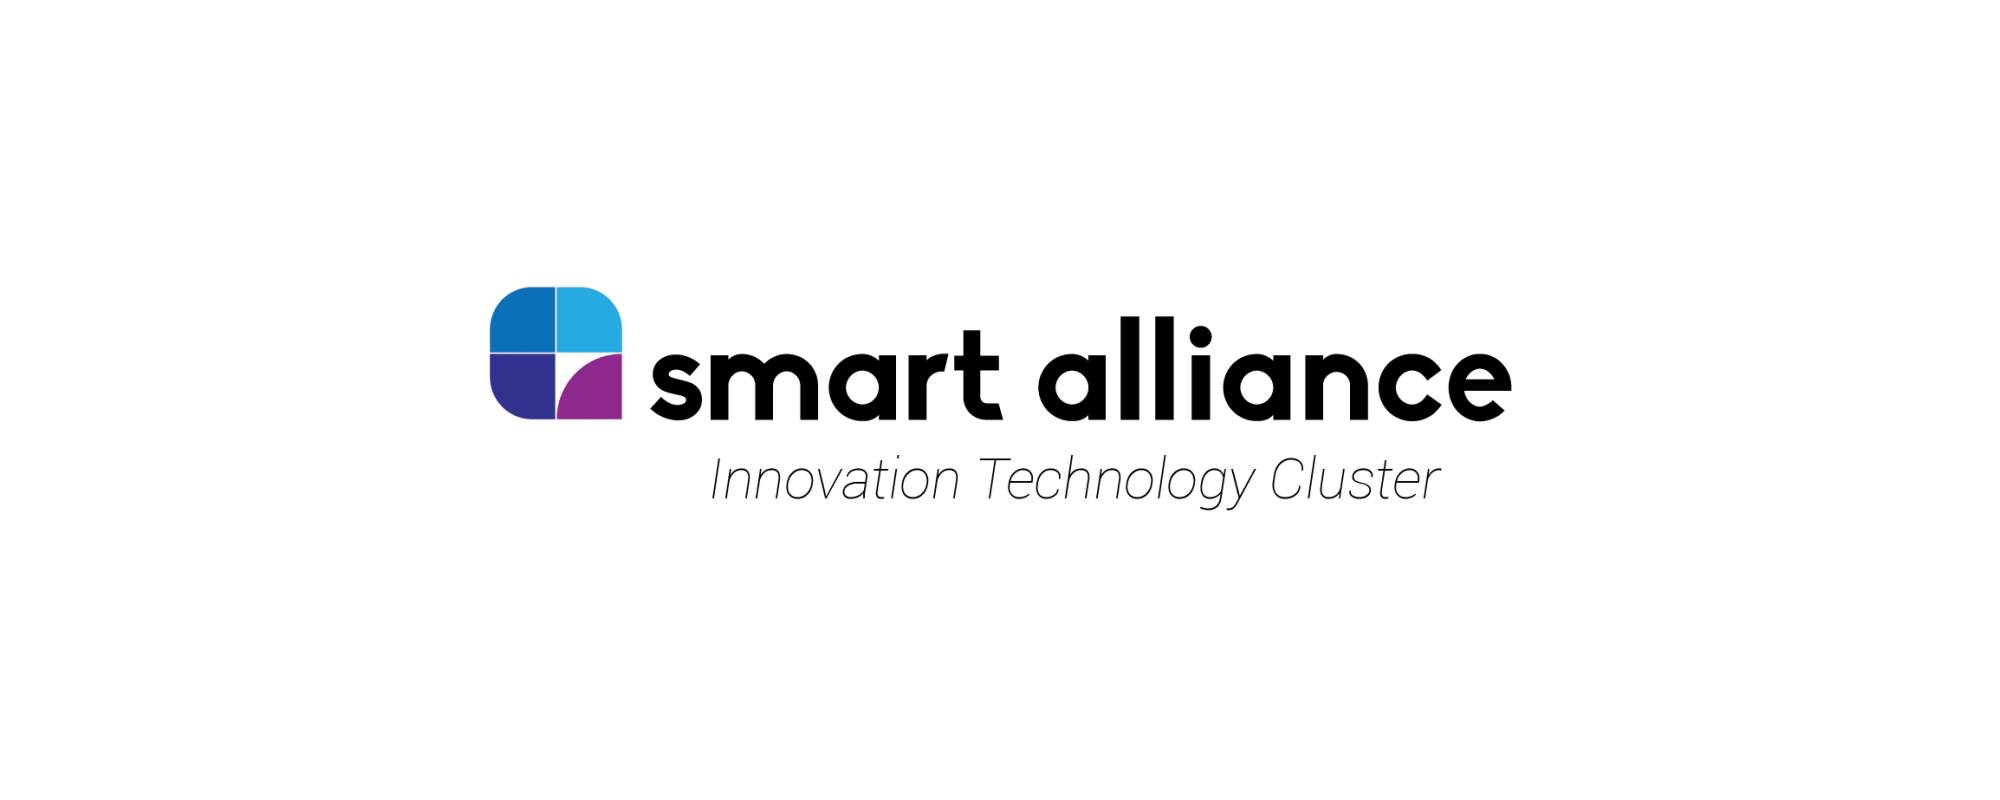 Smart Alliance, cel mai mare Cluster IT&C pe piaţa din România îşi deschide oficial porţile pentru parteneri de business